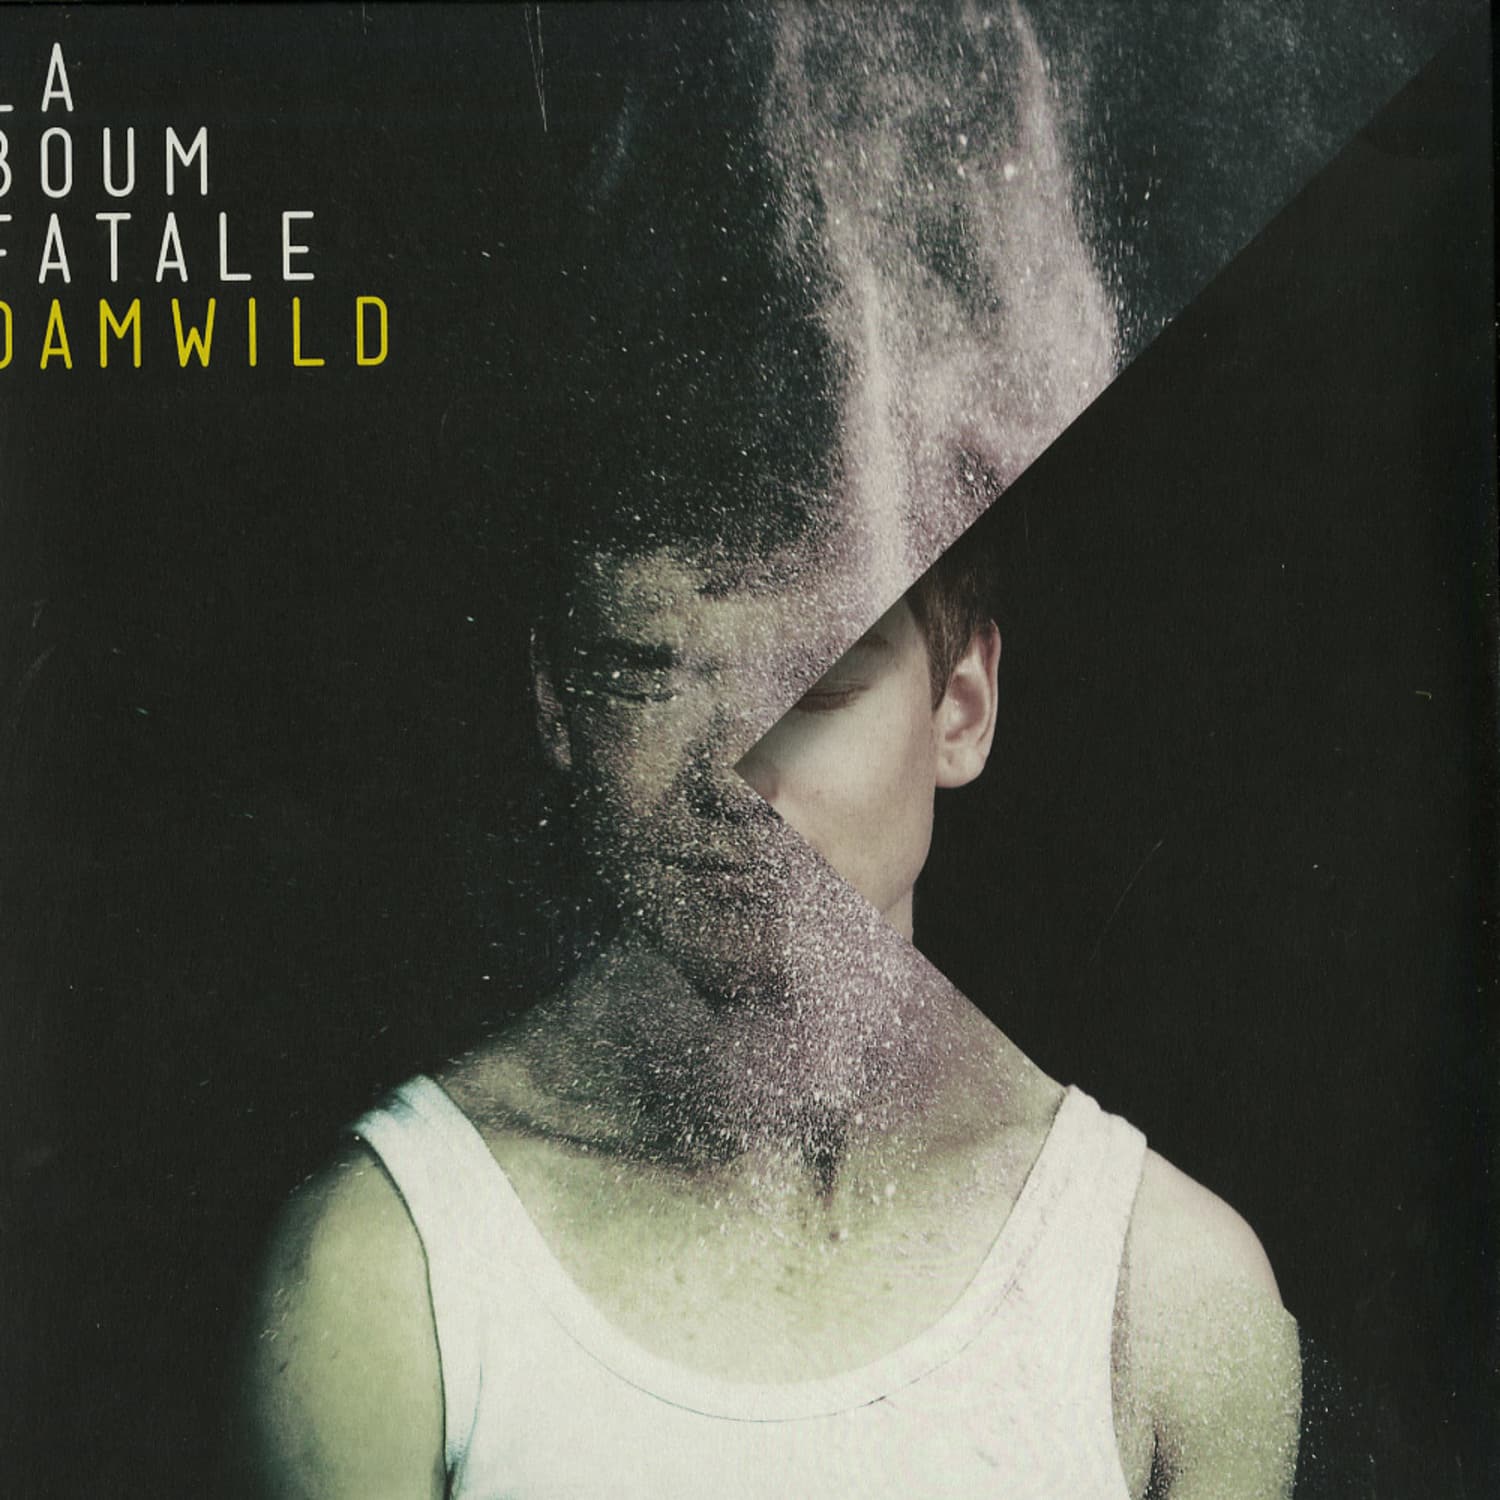 La Boum Fatale - DAMWILD 